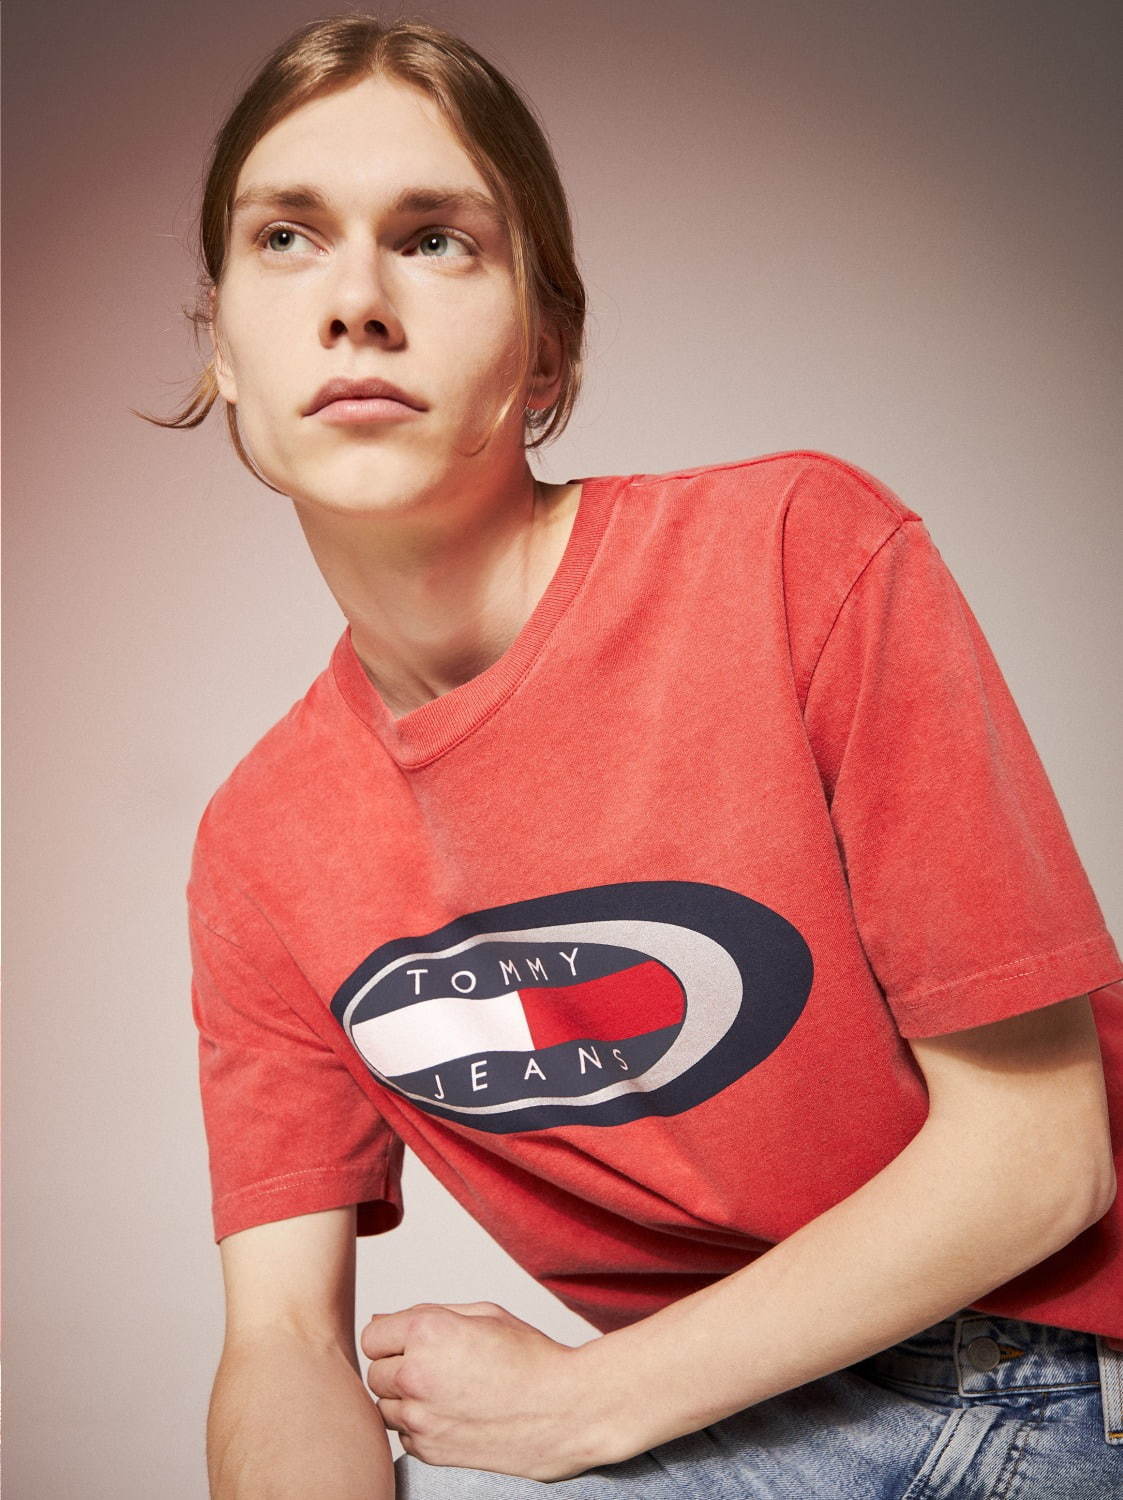 トミー ジーンズ、90年代スターロゴを現代に再解釈したTシャツ